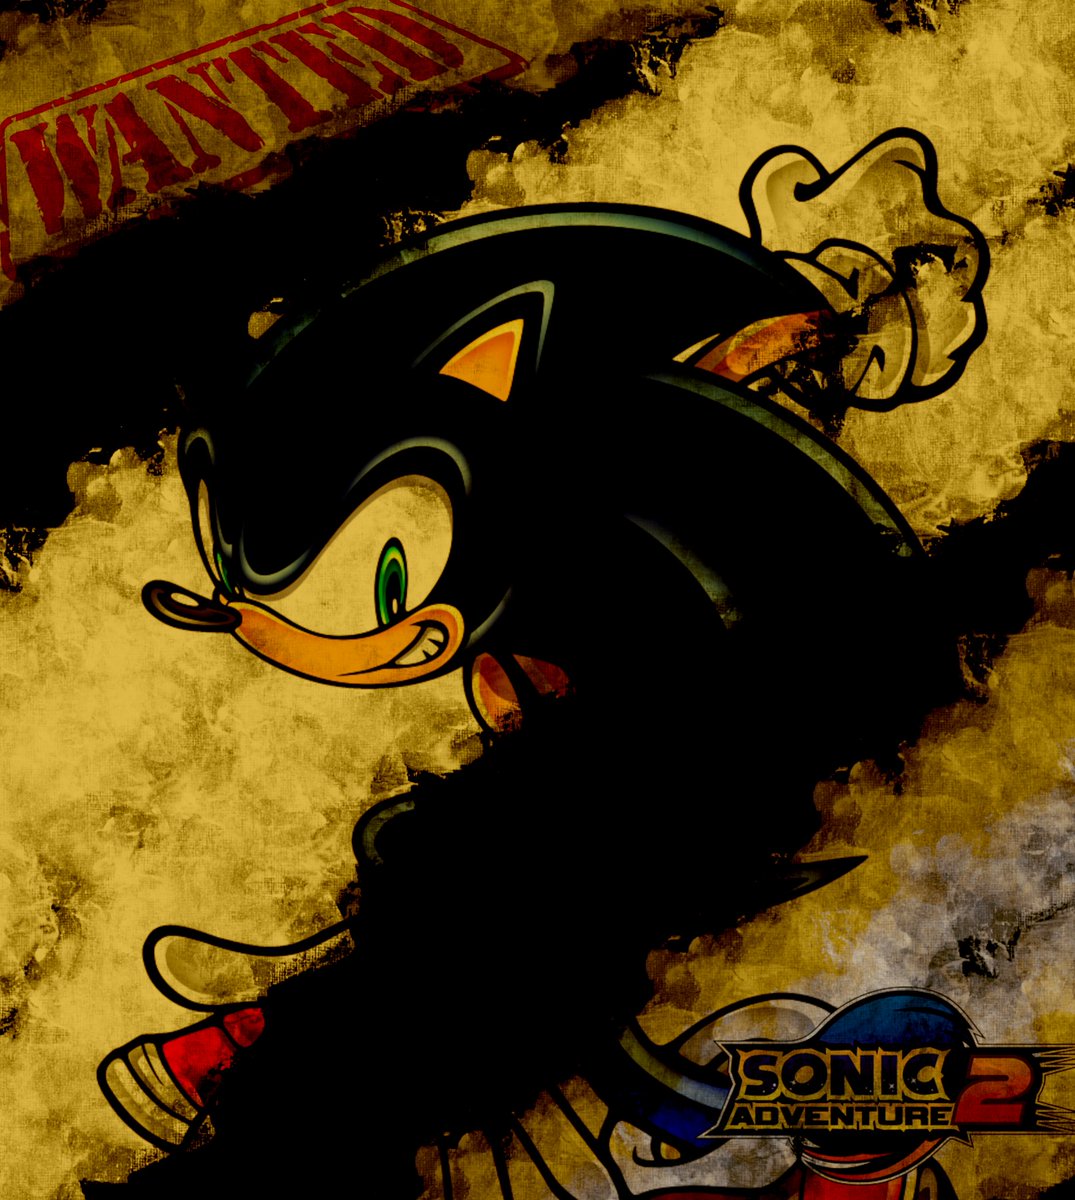 I got bored so I made this....

#SonicAdventure2 
#sonicthehedgehog